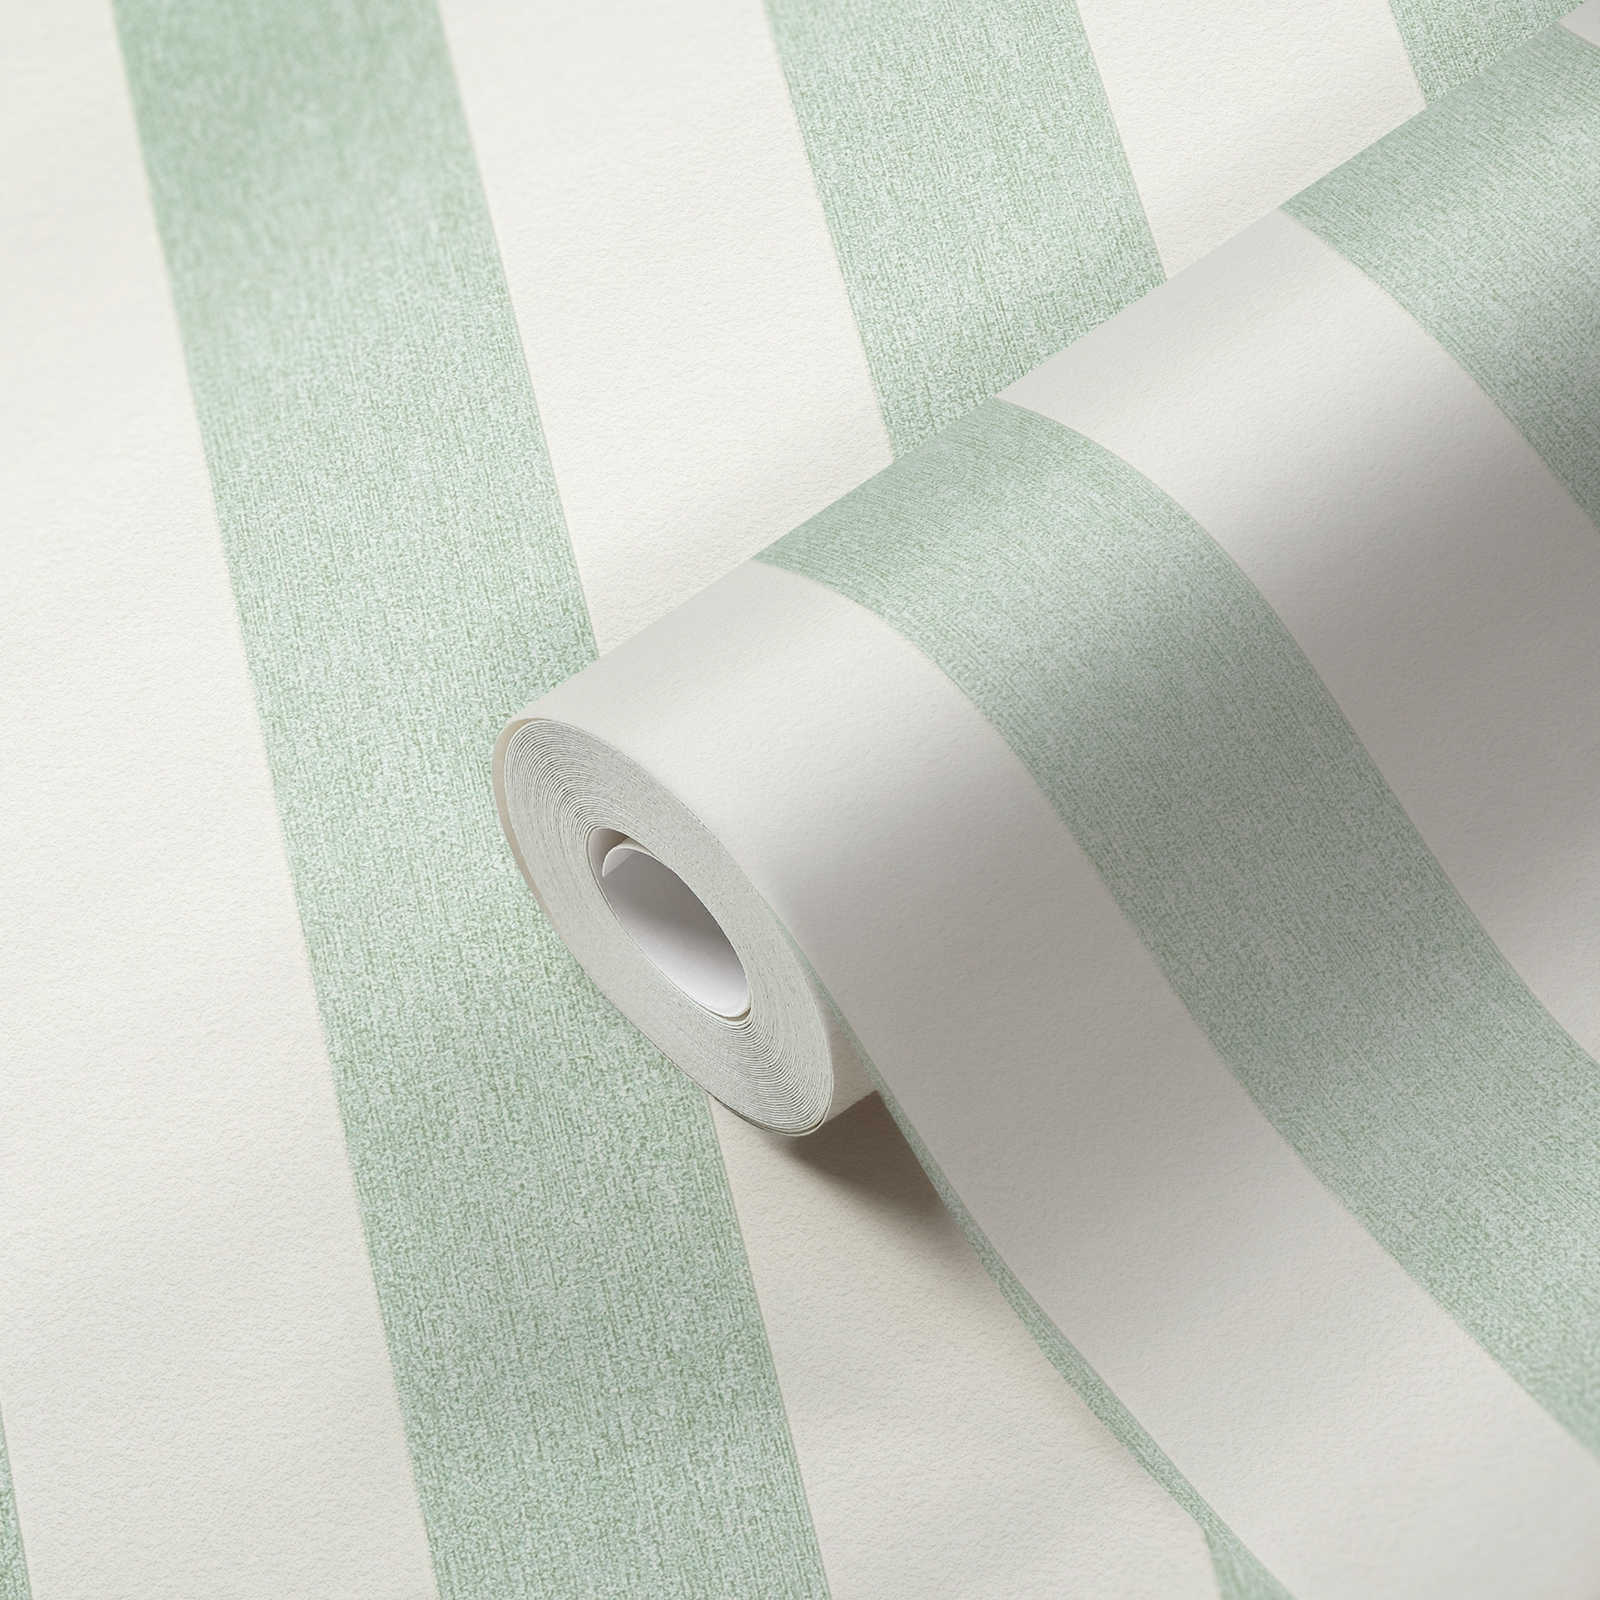             Carta da parati in tessuto non tessuto con strisce in aspetto strutturato e opaco - verde, bianco
        